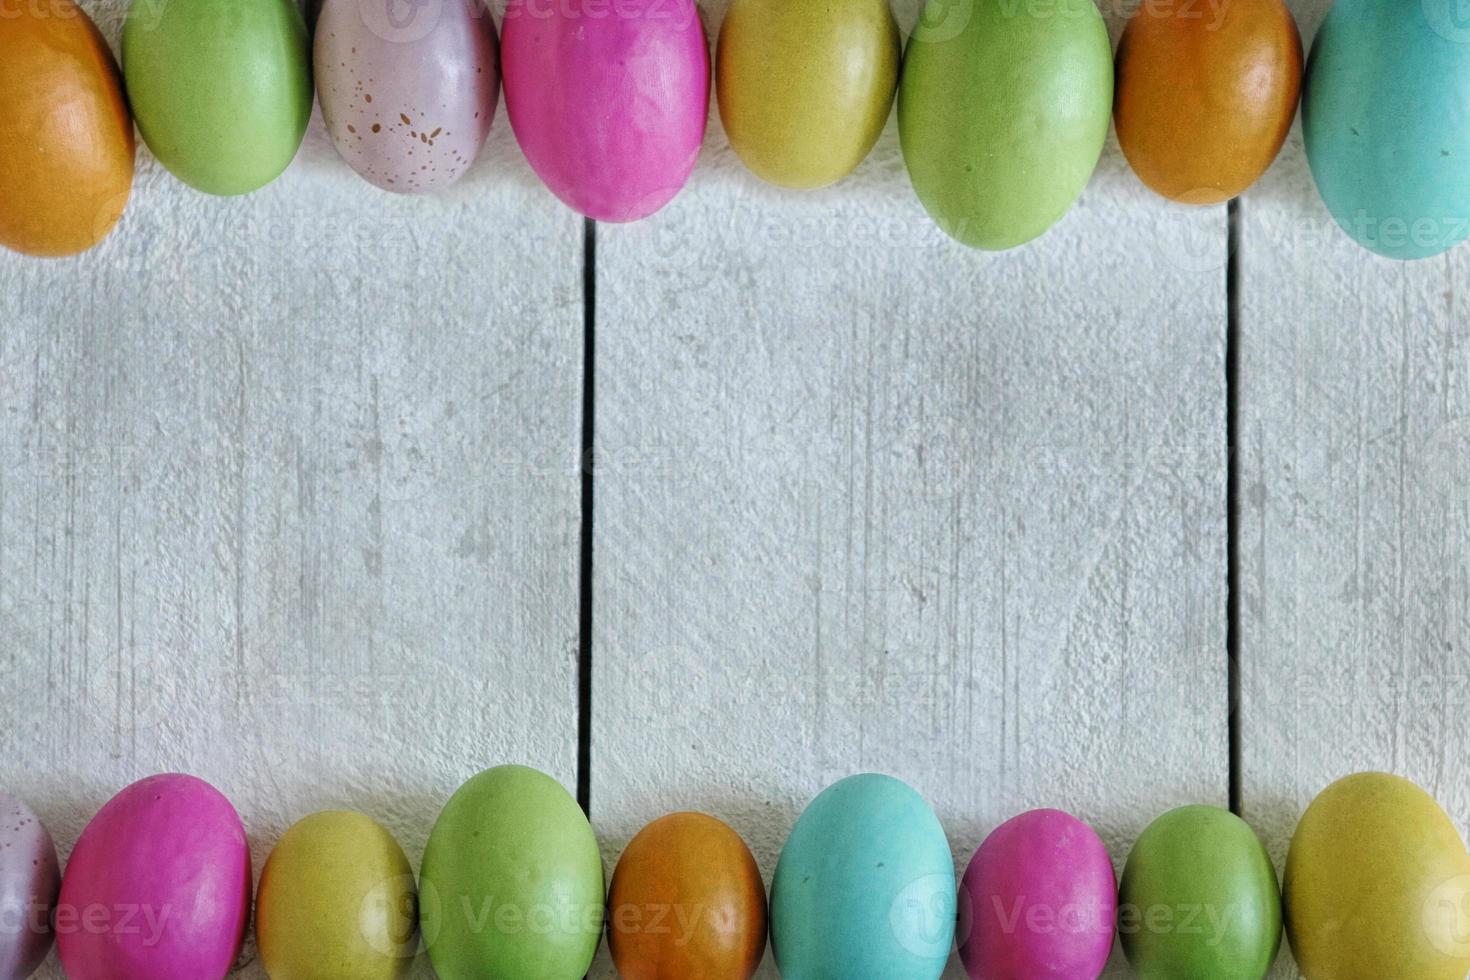 Pascua o primavera fondo temático de madera vieja y huevos de colores alineados foto